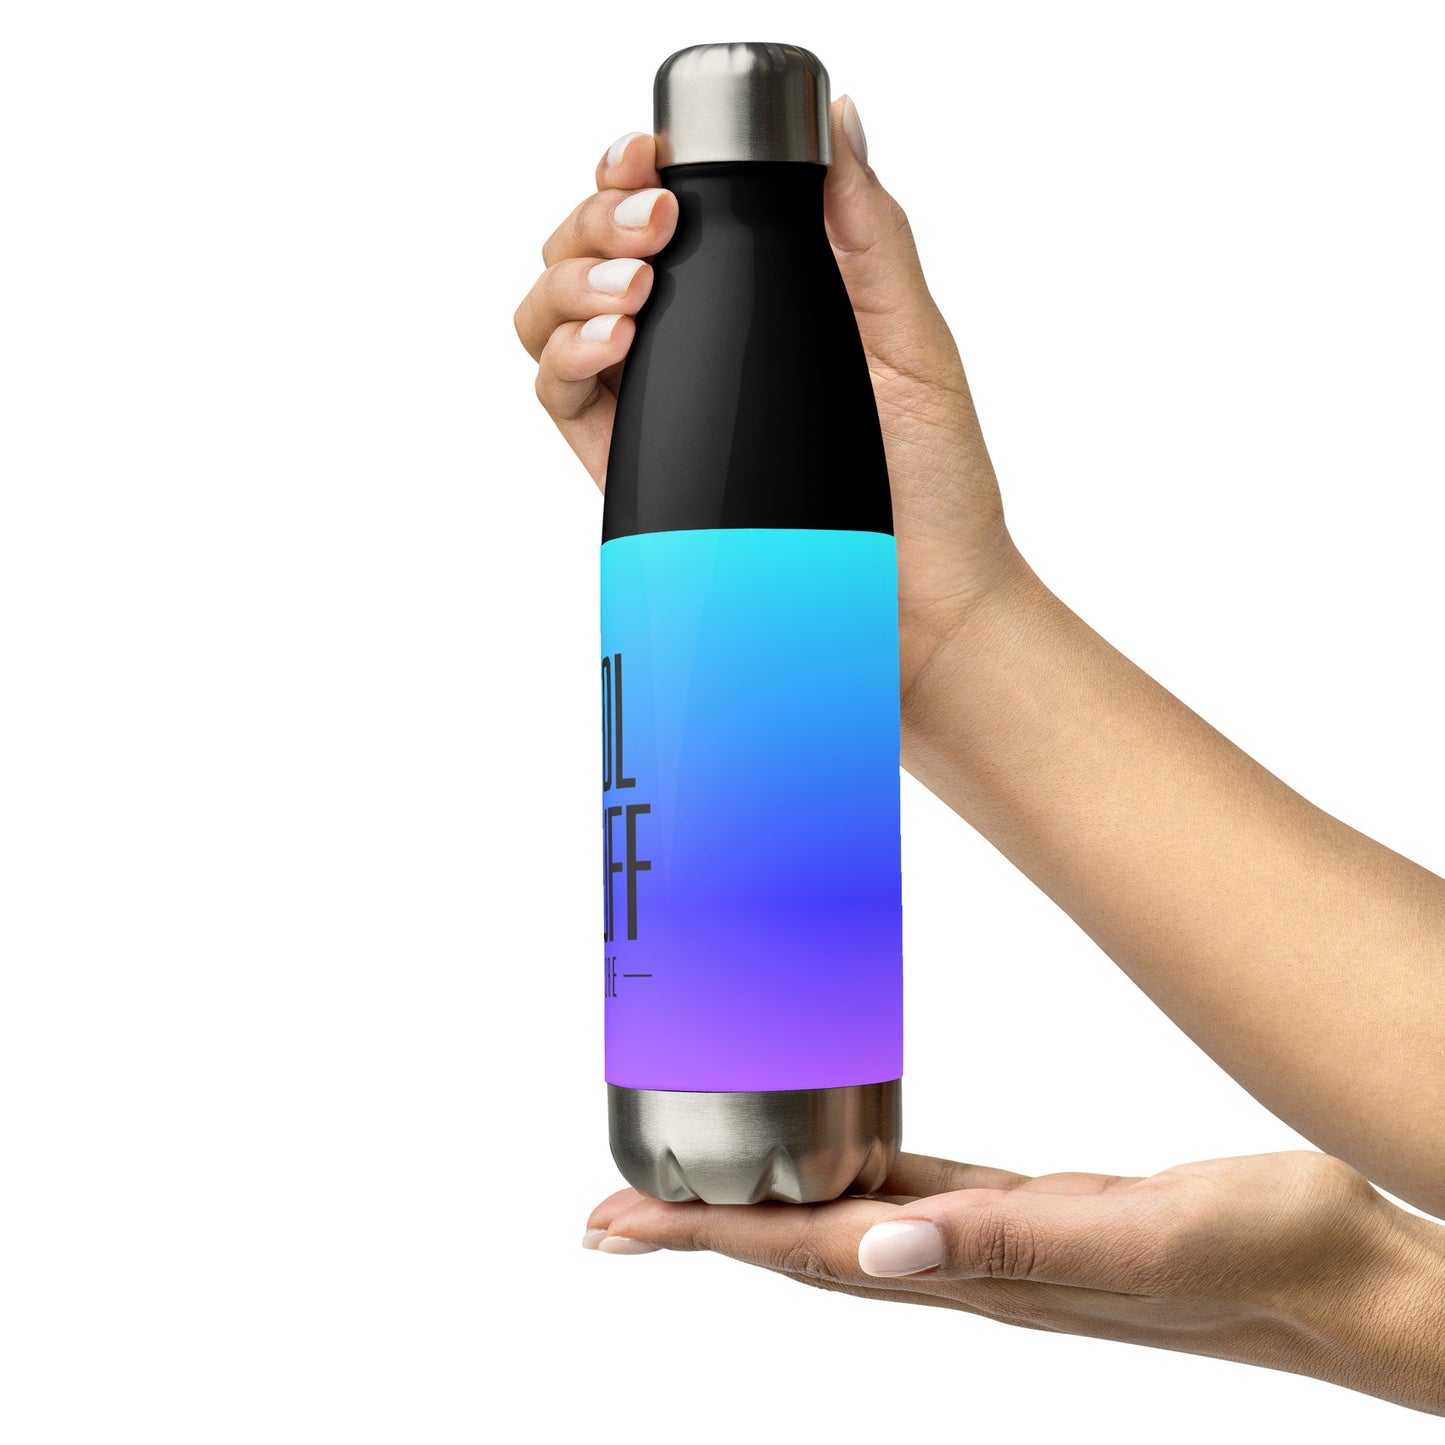 Cool Stuff stainless steel water bottle - gradient purple